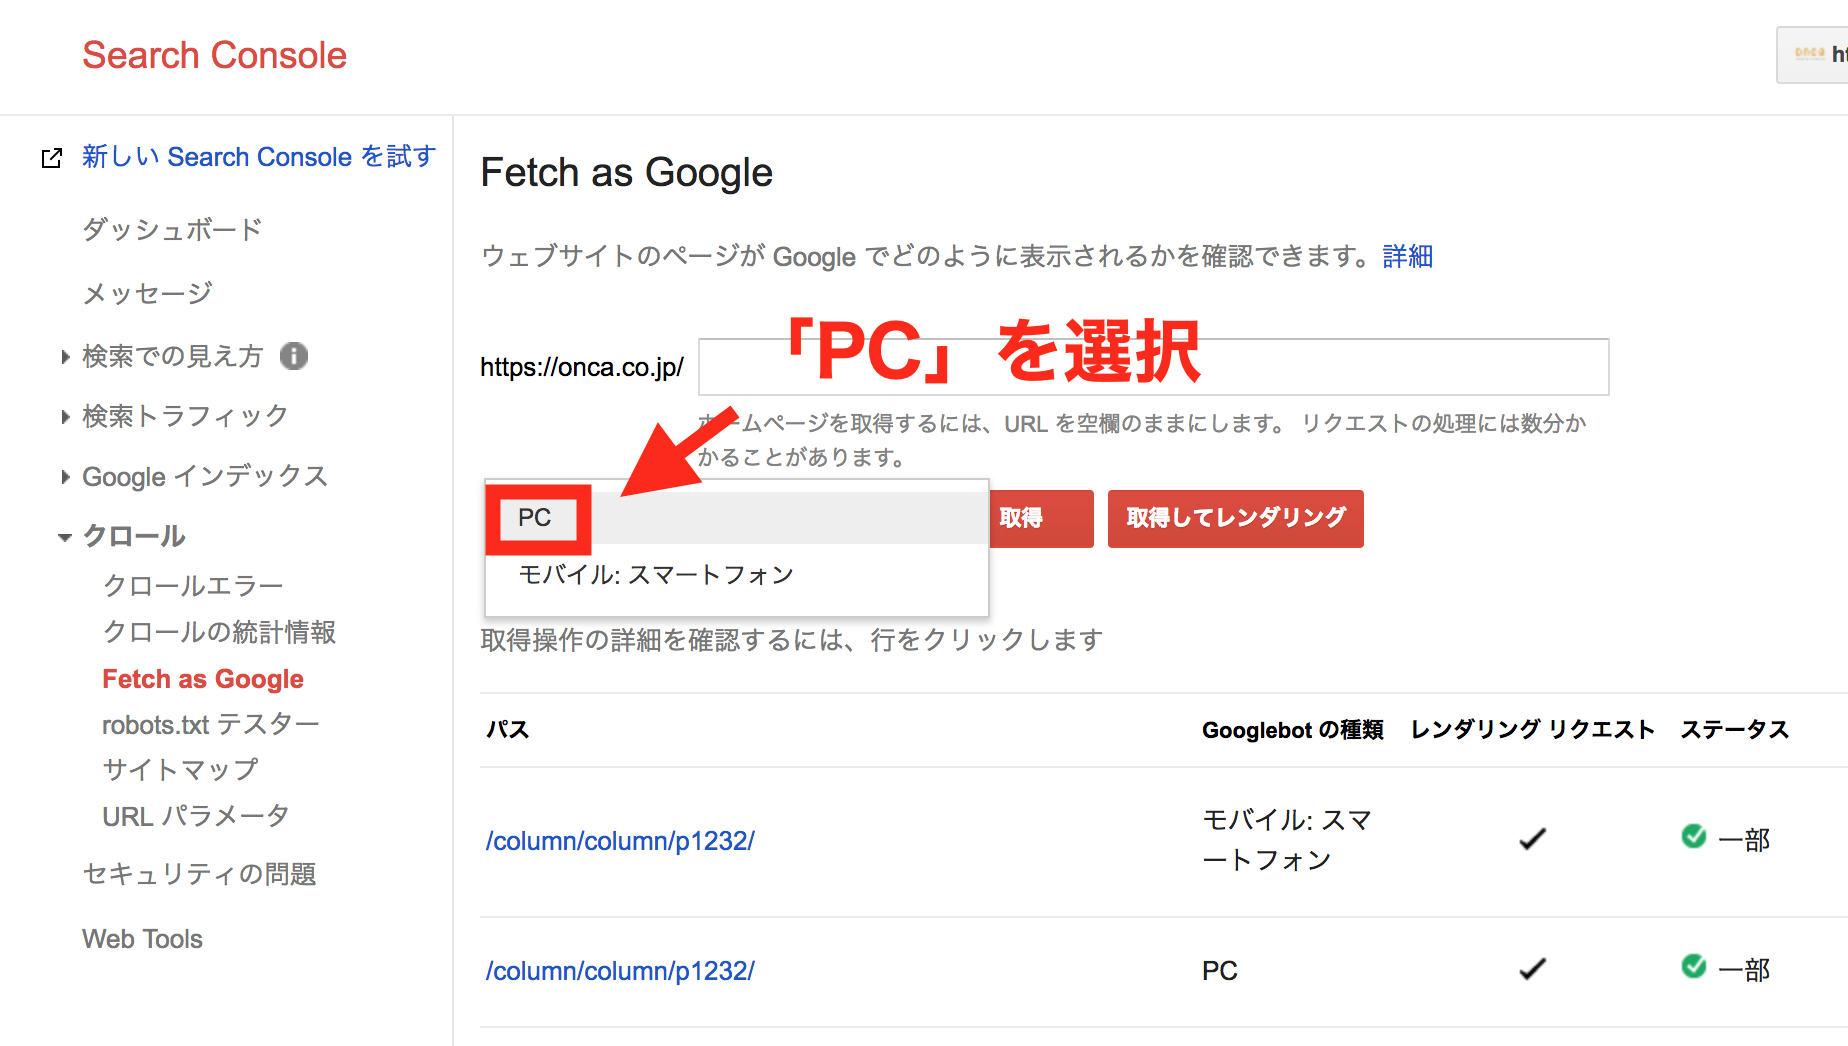 Fetch as Google③